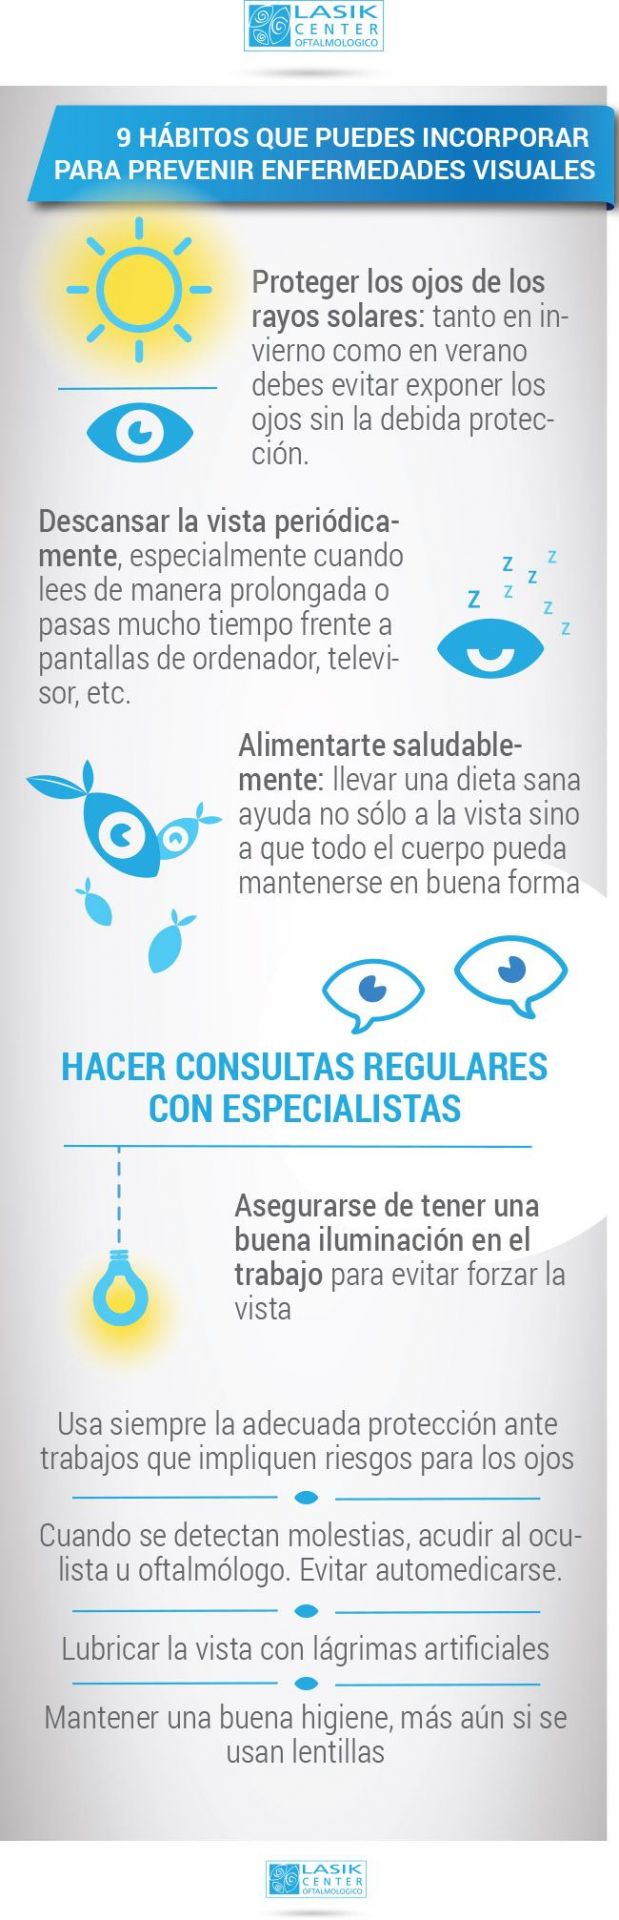 infografia prevenir enfermedades visuales